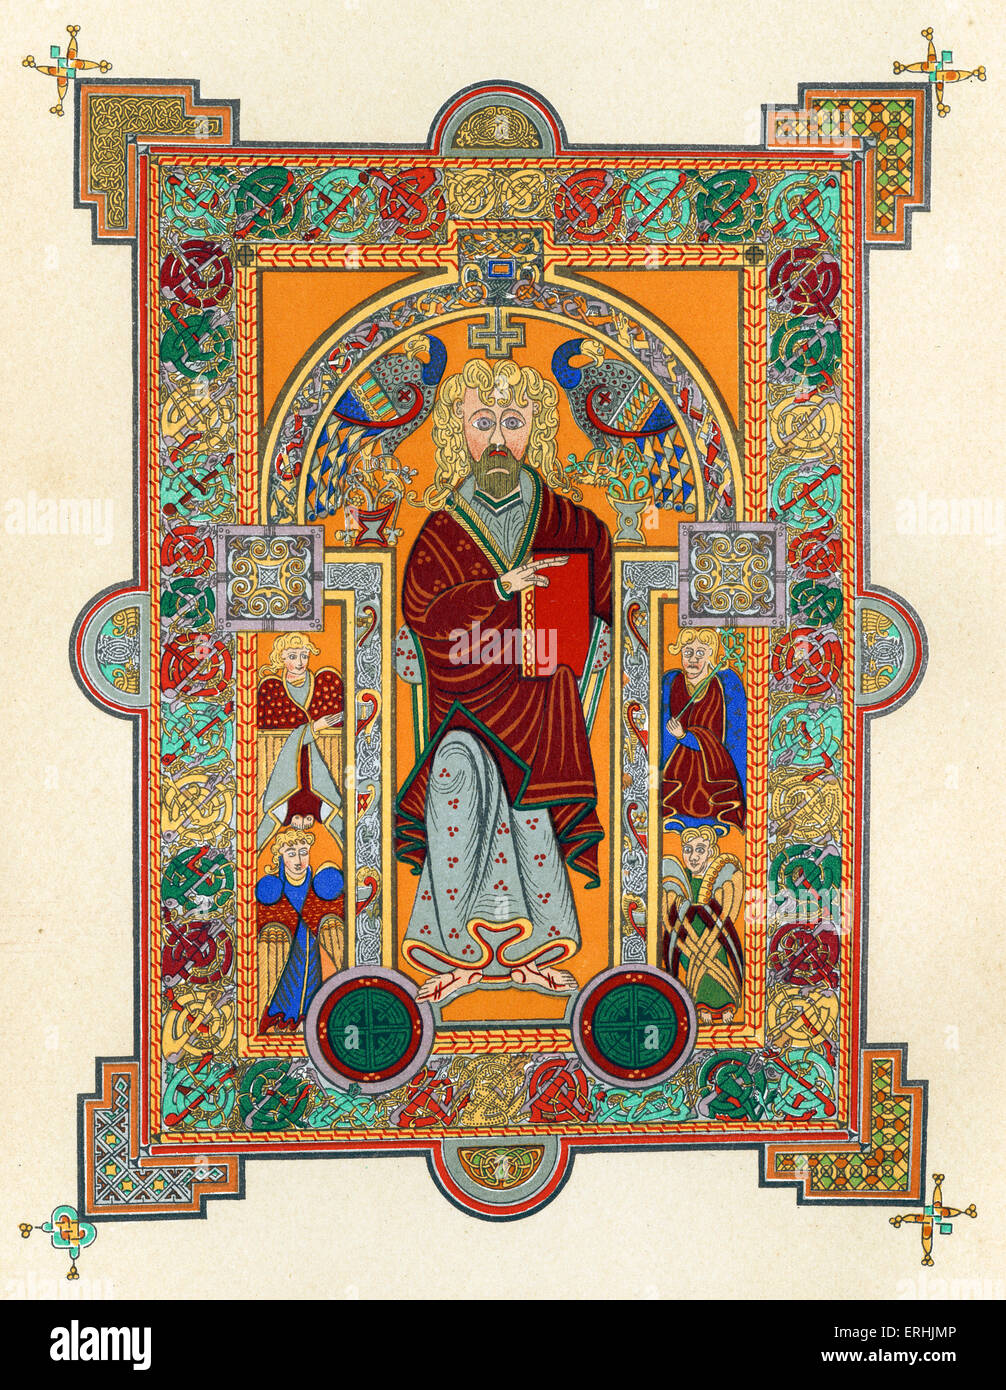 Saint Matthieu. Dans le Livre de Kells, A.D. 650-690. Un manuscrit richement illustré réalisé par des moines celtes autour de l'ANNONCE 800 Banque D'Images